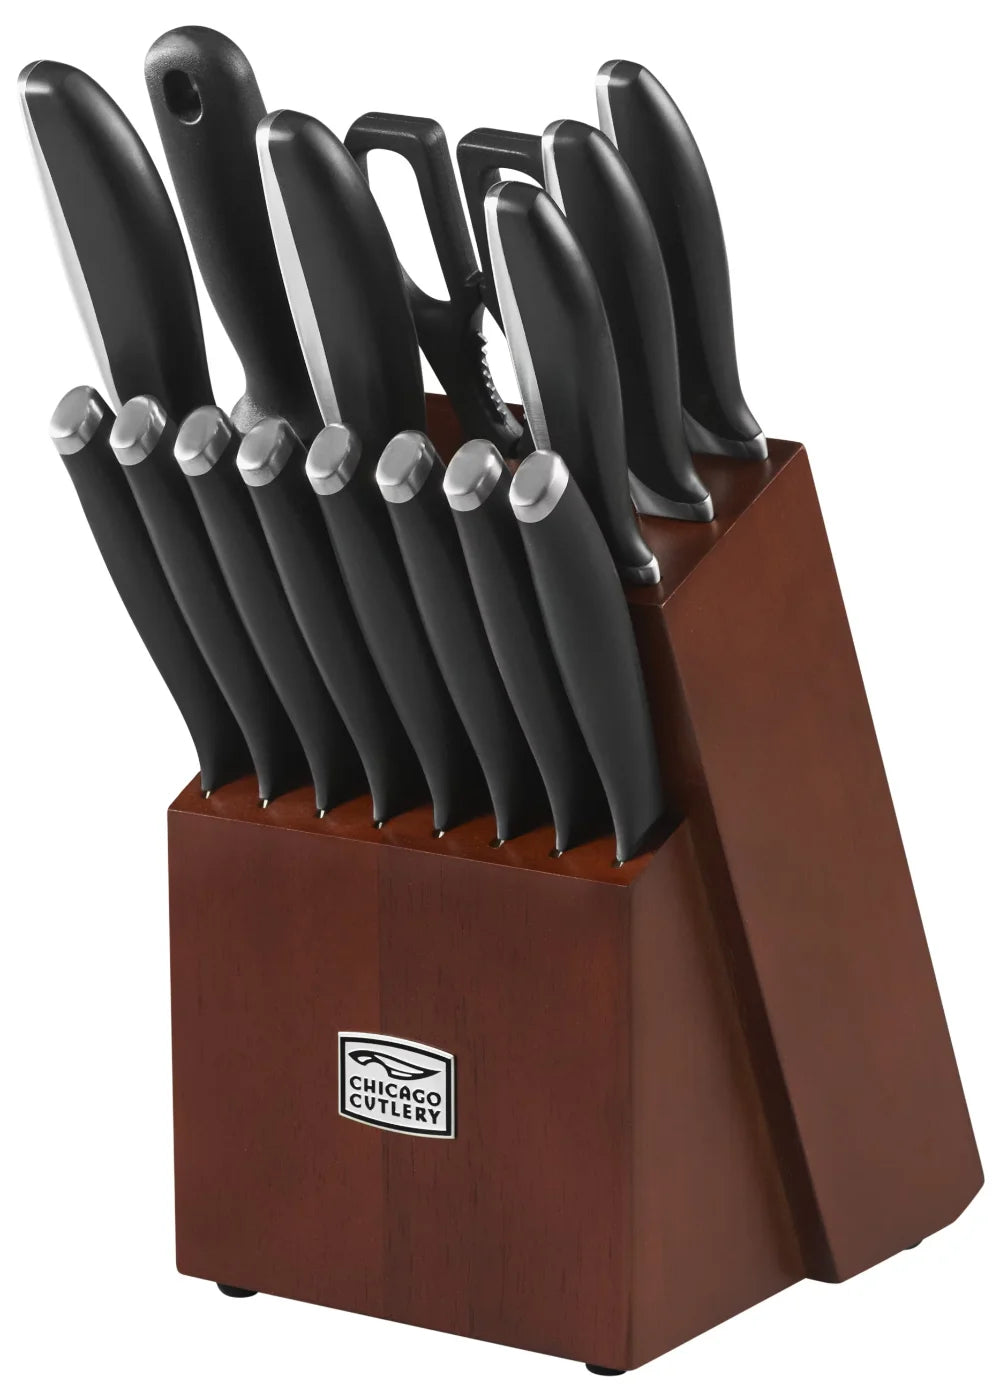 Chicago Cutlery Avondale 16-Piece Kitchen Knife Set with Wood Block knife set  kitchen knife set  tools